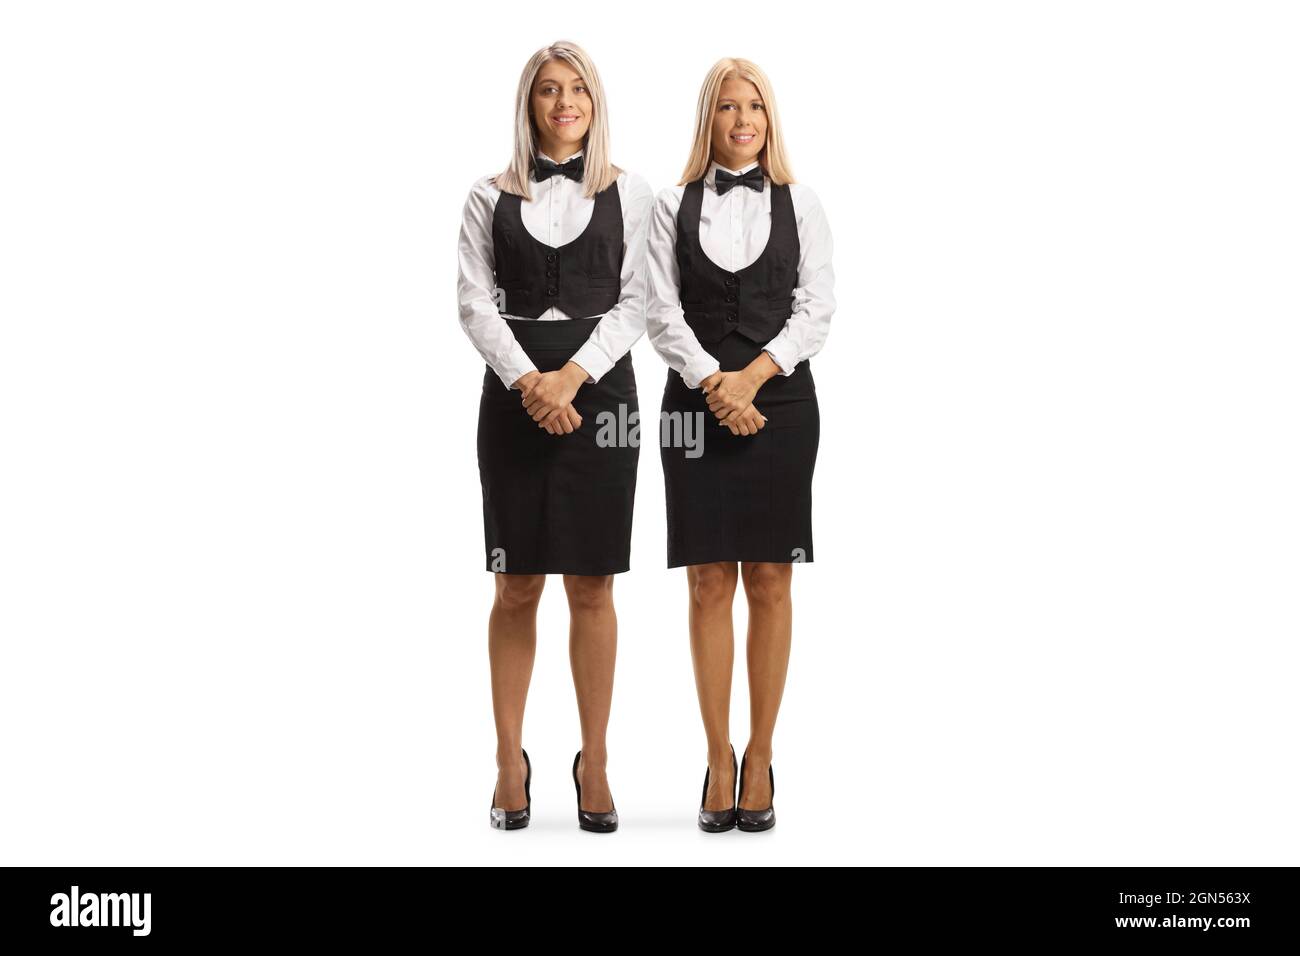 Camareras con su uniforme recortadas stock Alamy